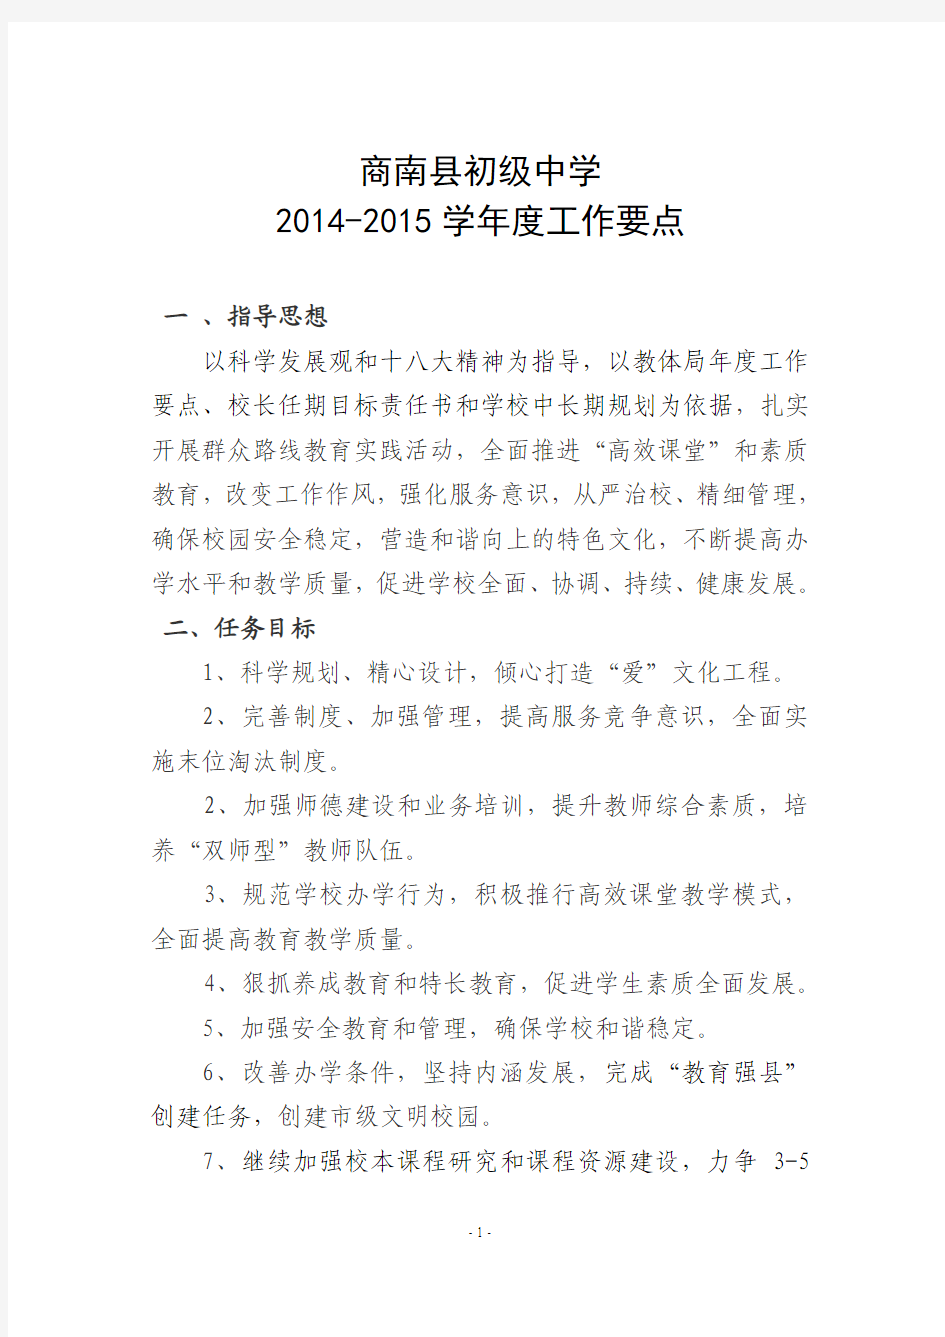 商南县初级中学2014-2015要点